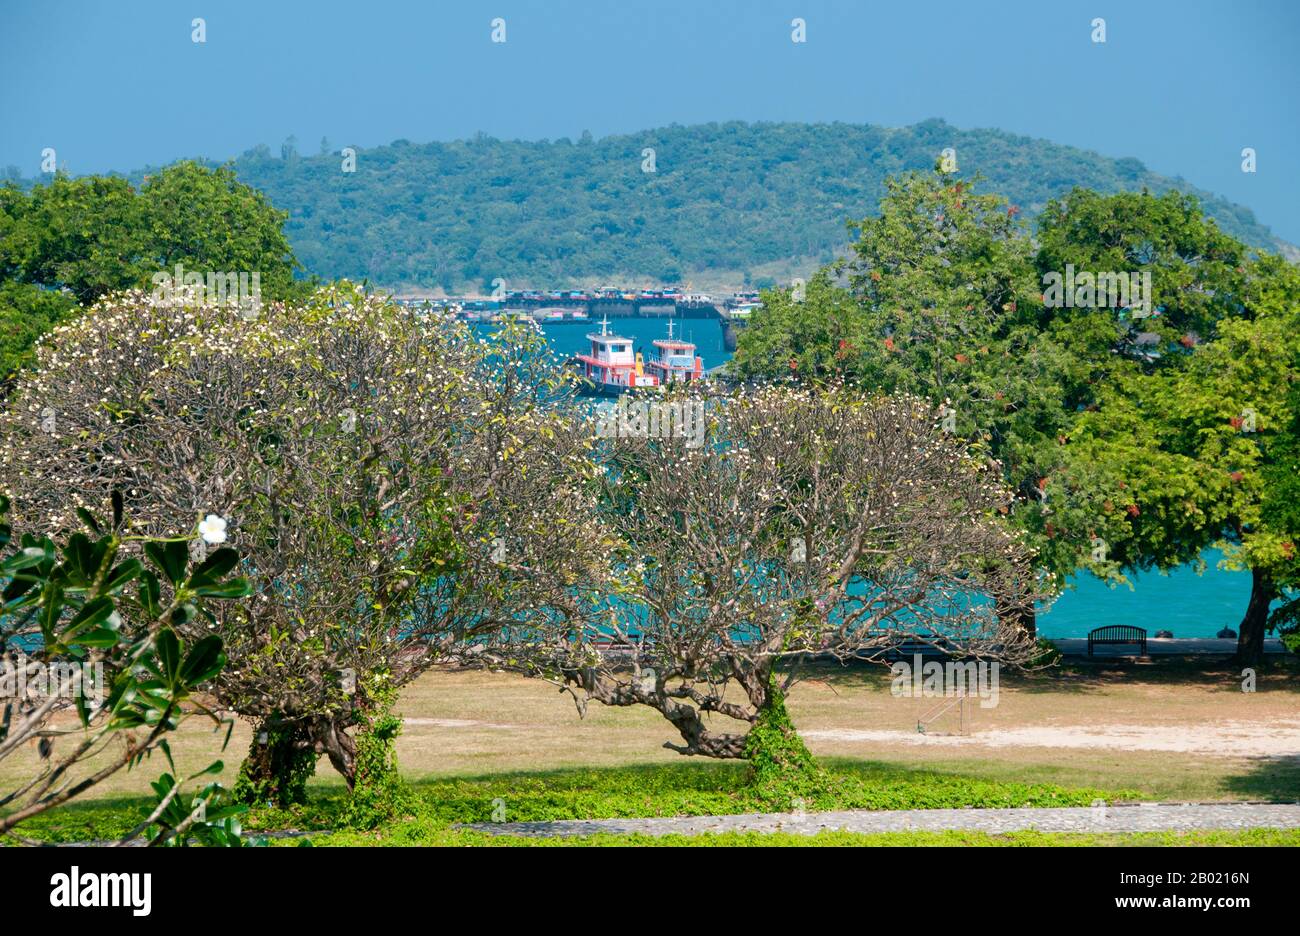 Der Palast von Rama V., der lokal als Phra Chutathut Ratchasathan bekannt ist, wurde im 19. Jahrhundert erbaut. König Chulalongkorn (Rama V.) nutzte den Palast als sommerlichen Rückzug aus Bangkoks steifer Hitze. Der ursprüngliche Palast, der Vimanmek-Palast, stand hier, bis er 1901 Stück für Stück in den Dusit-Park in Bangkok verlegt wurde. Der goldene Teakpalast wurde von König Chulalongkorn entworfen. Stockfoto